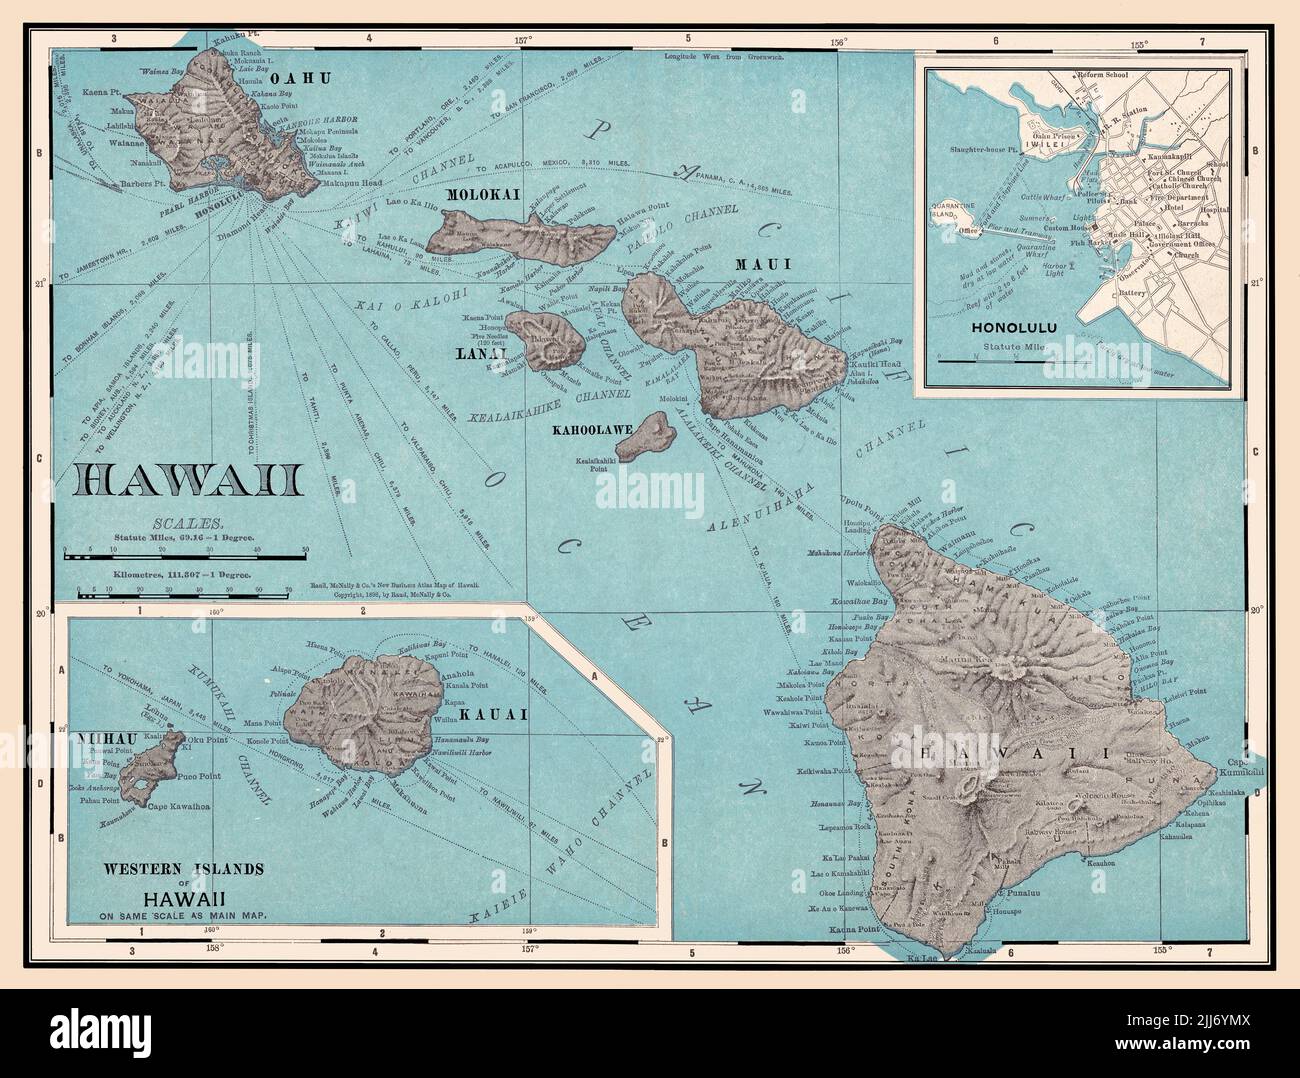 Una reproducción restaurada y mejorada de un antiguo mapa de las islas hawaianas de 1898 con las distancias a varios destinos. La esquina superior derecha incluye un mapa de la ciudad de Honolulu. Foto de stock